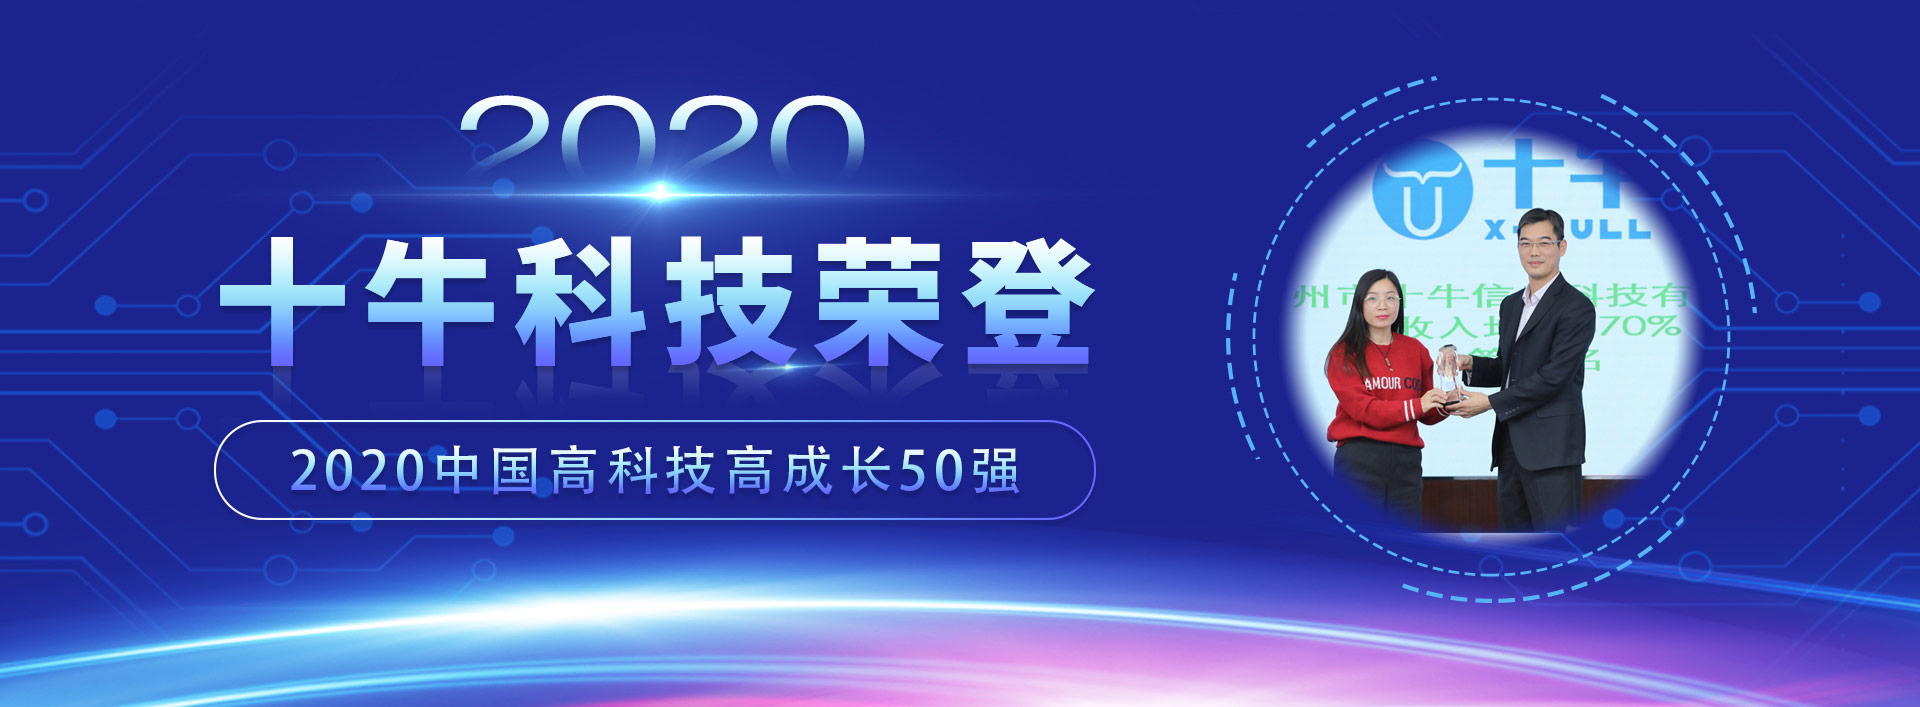 十牛科技获评德勤“2020中国高科技高成长企业50强”之现场回顾